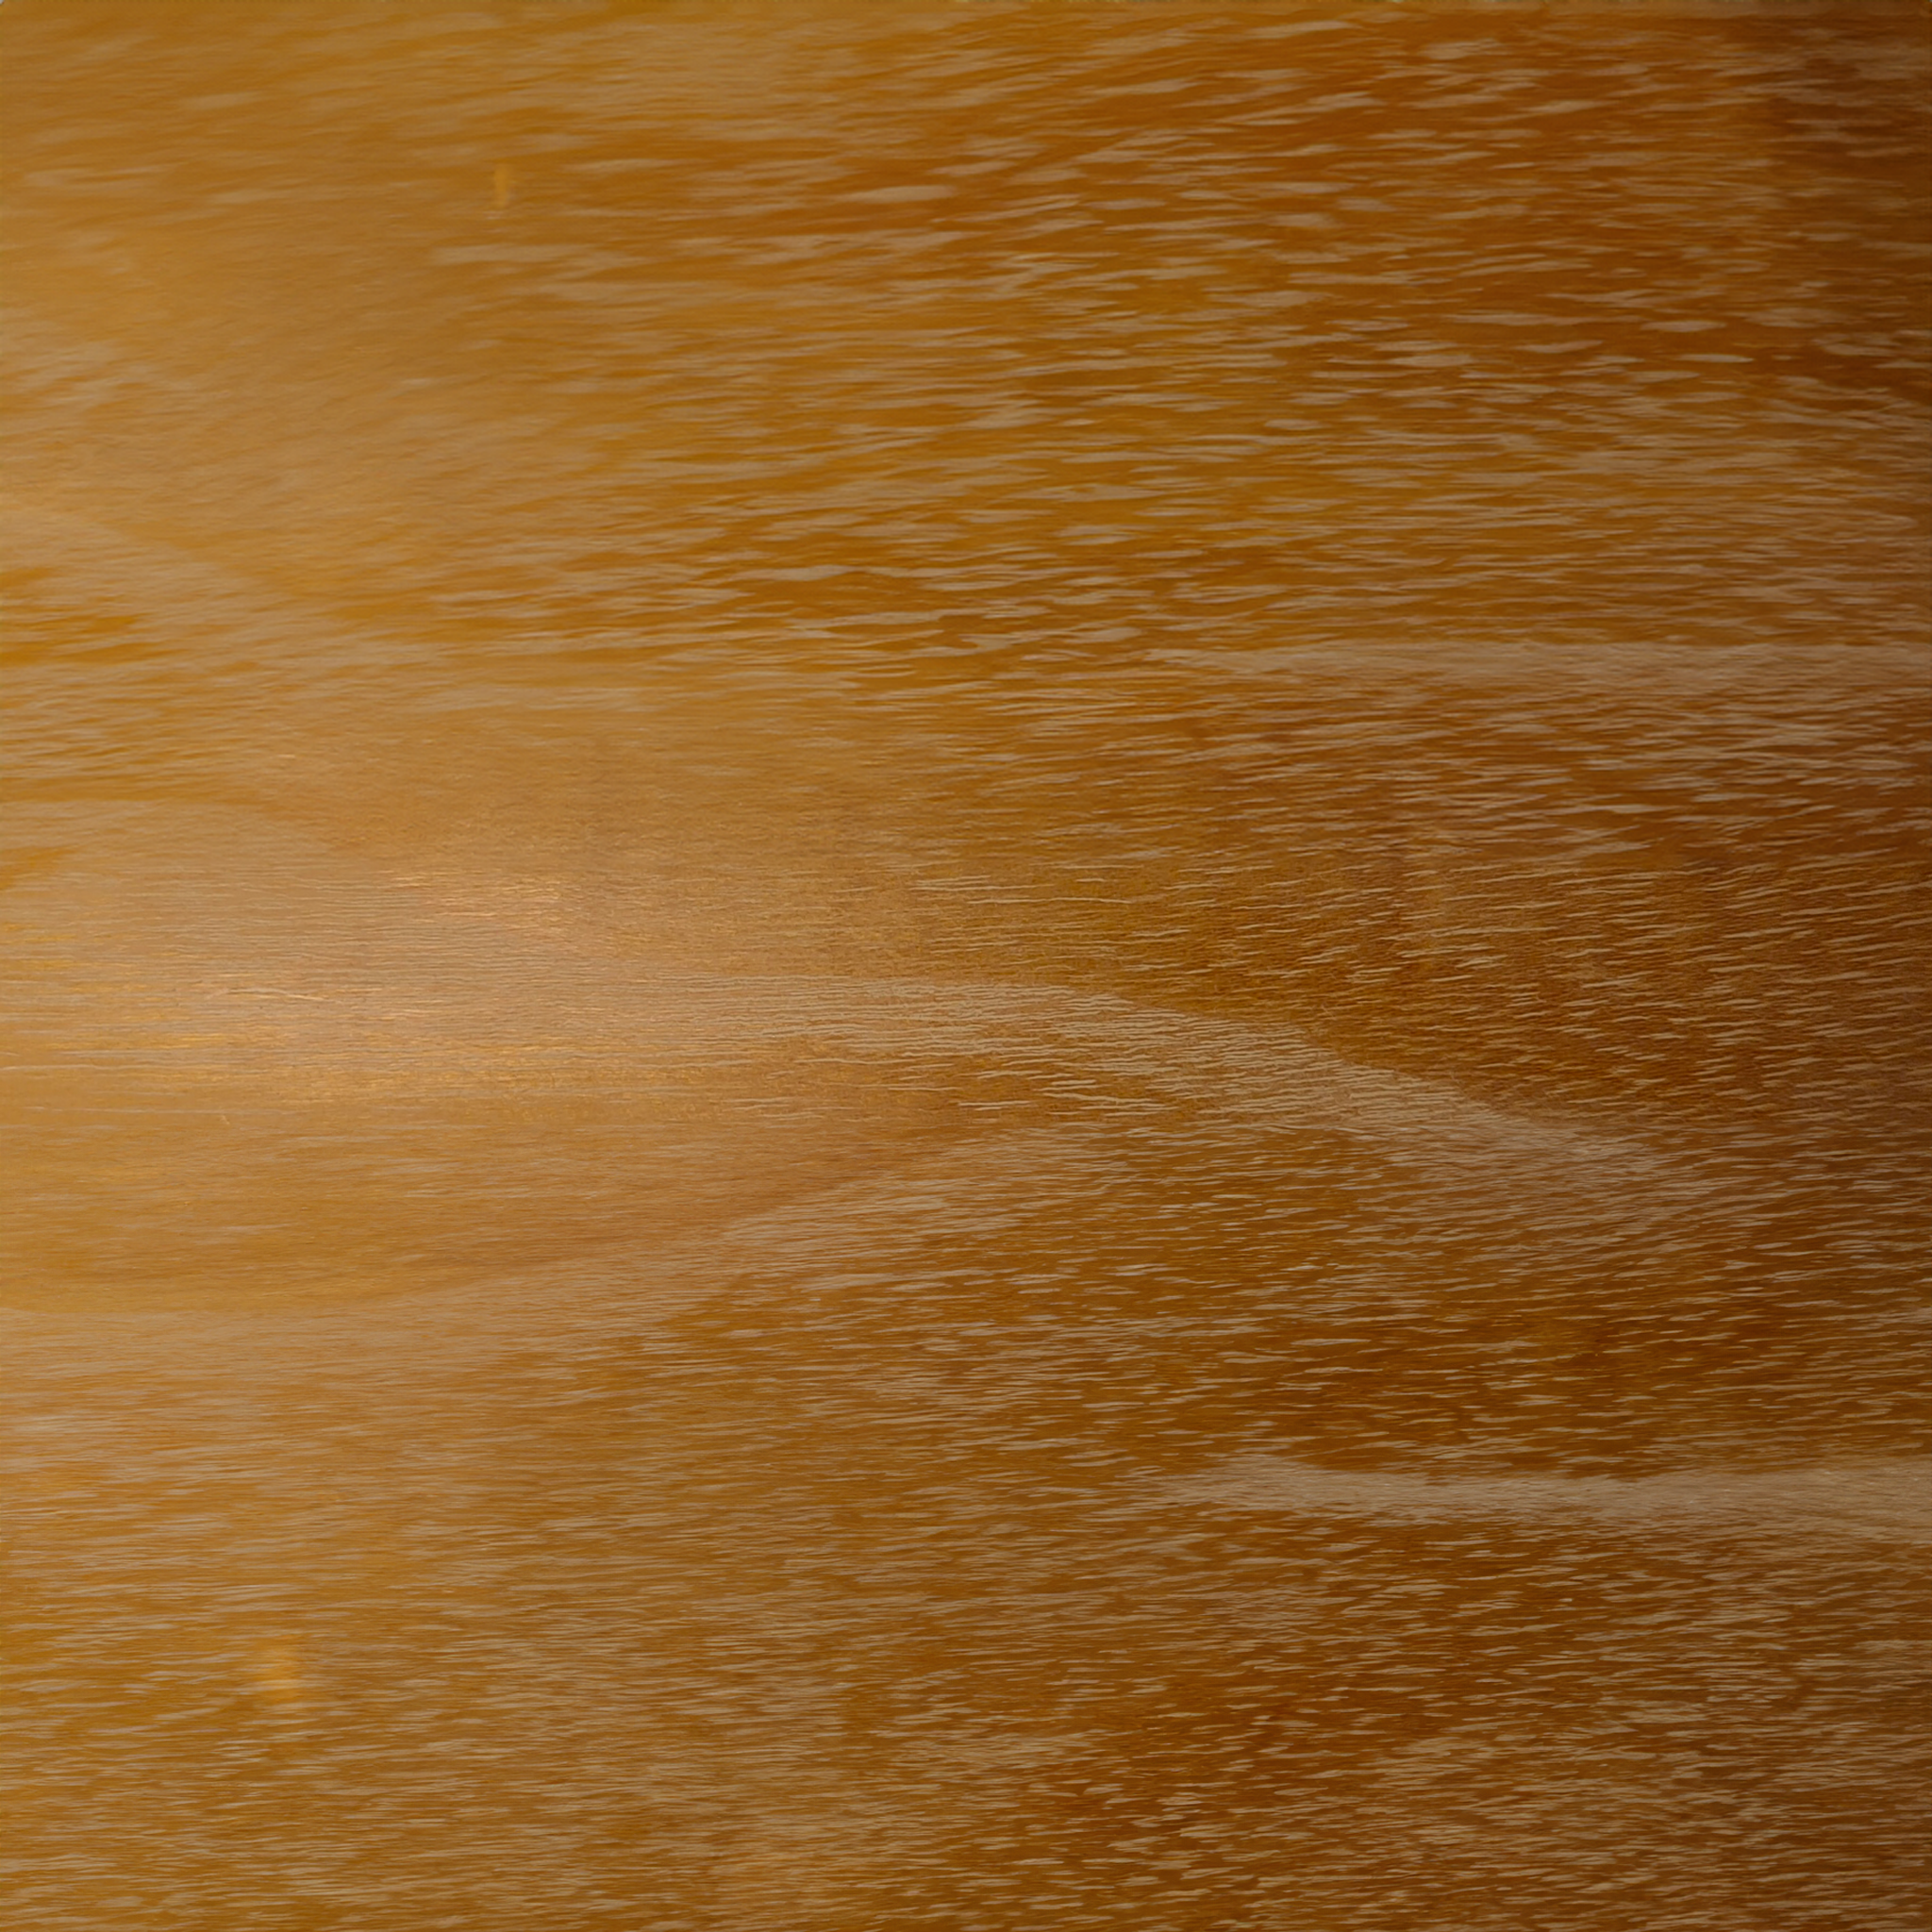 osage orange nachhaltige Holzpflege aus 100% natürlichen Inhaltsstoffen. studio moreandless